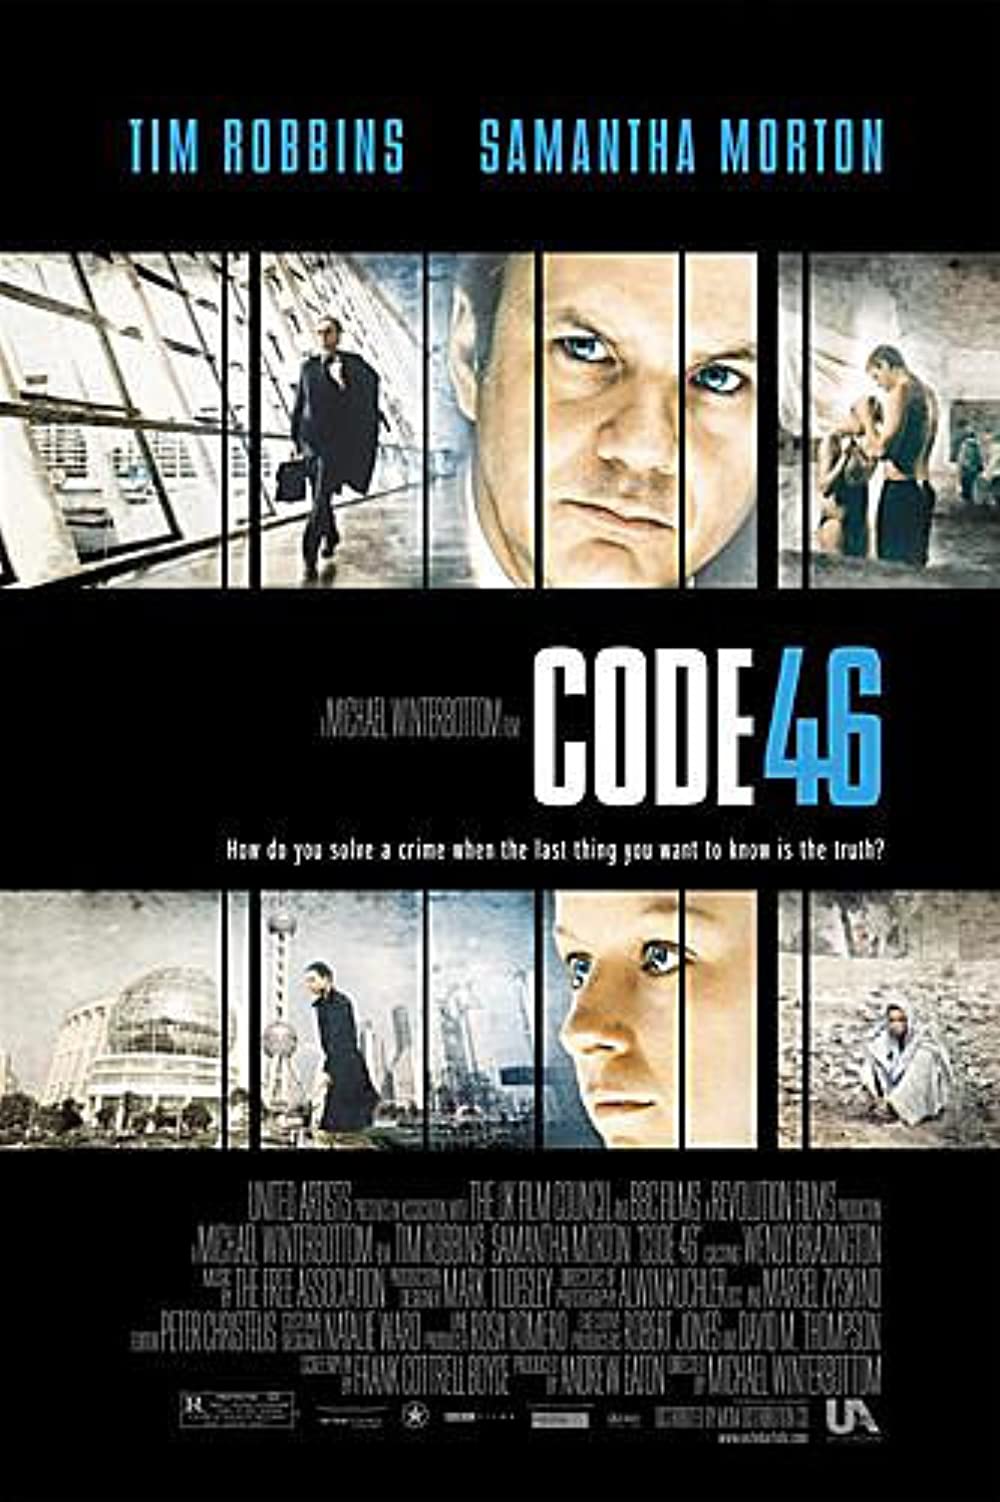 ดูหนังออนไลน์ฟรี Code 46 (2003) โค๊ด โฟร์ตี้ซิก